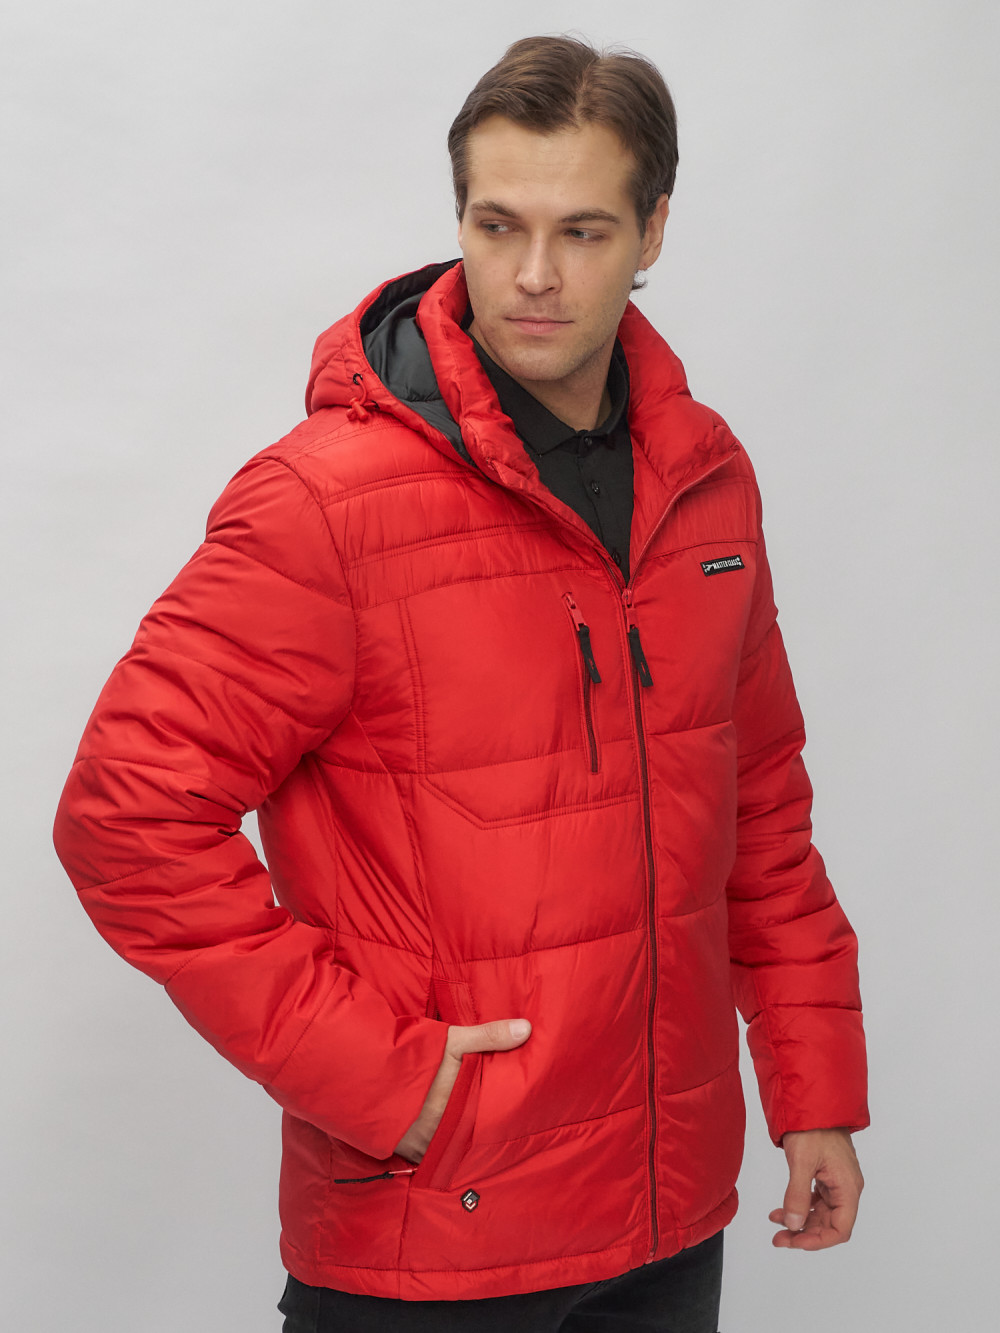 Купить куртку мужскую спортивную весеннюю оптом от производителя недорого в Москве 62190Kr 1